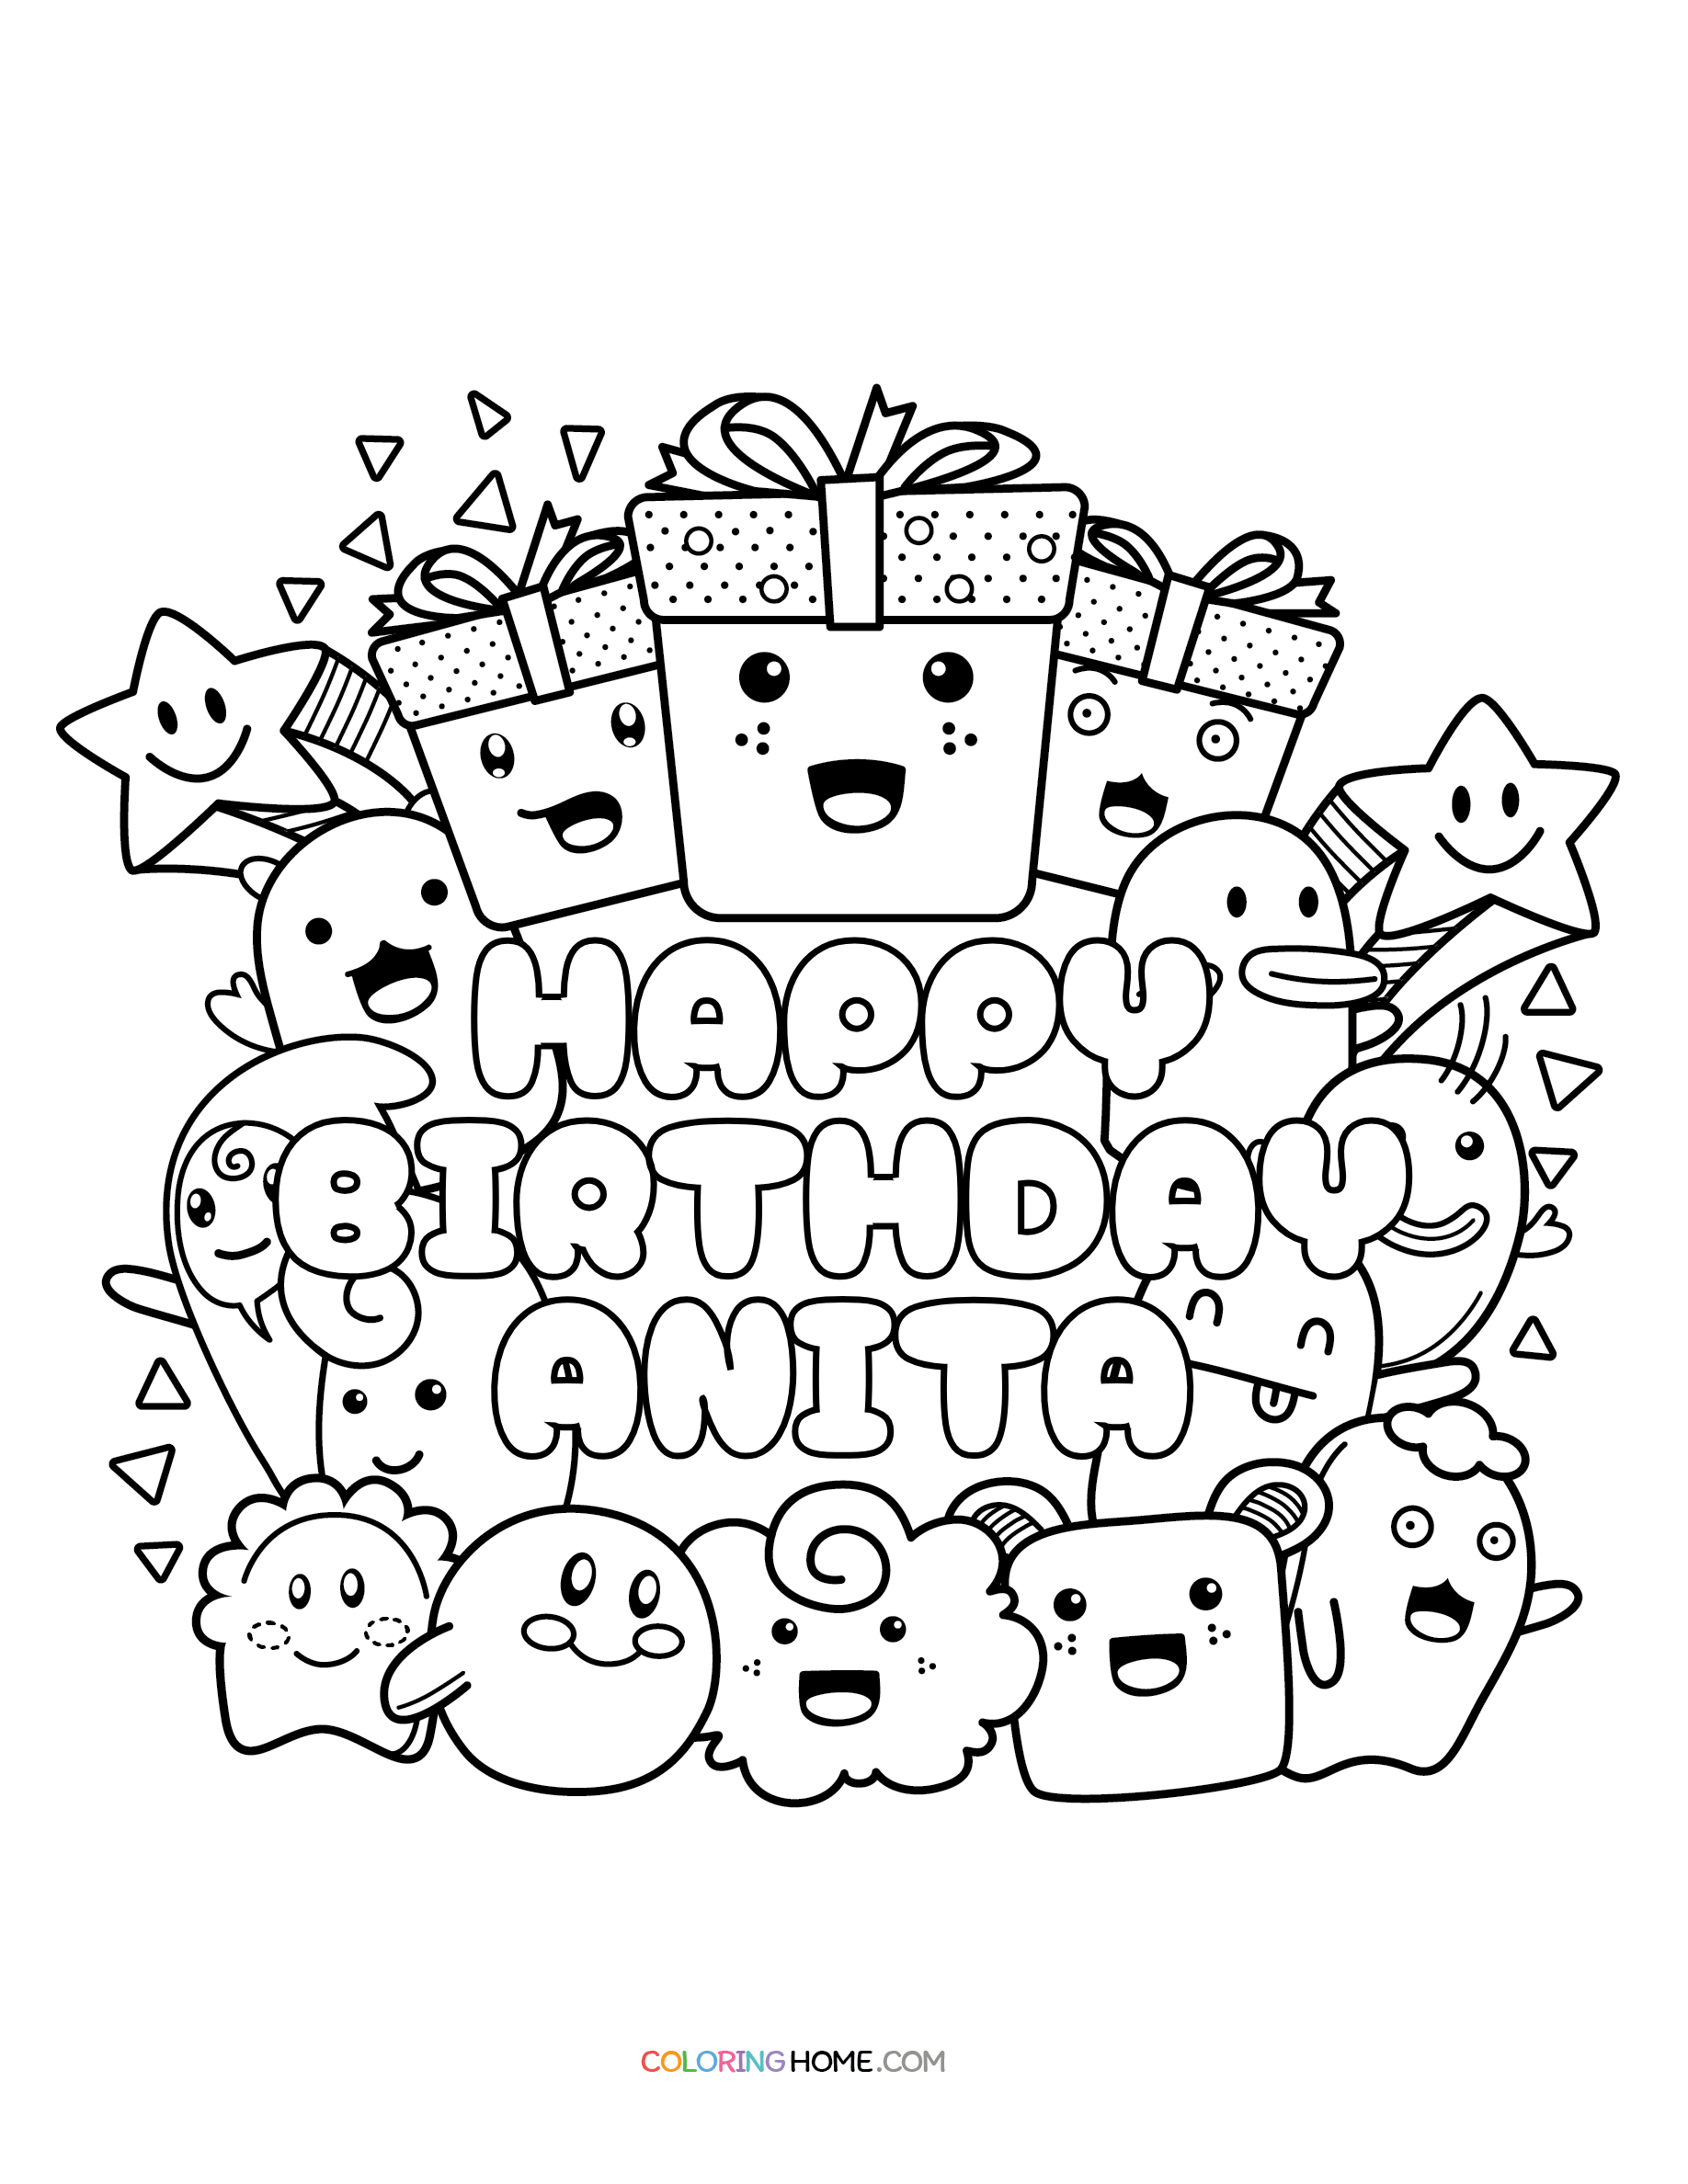 Happy Birthday Anita coloring page